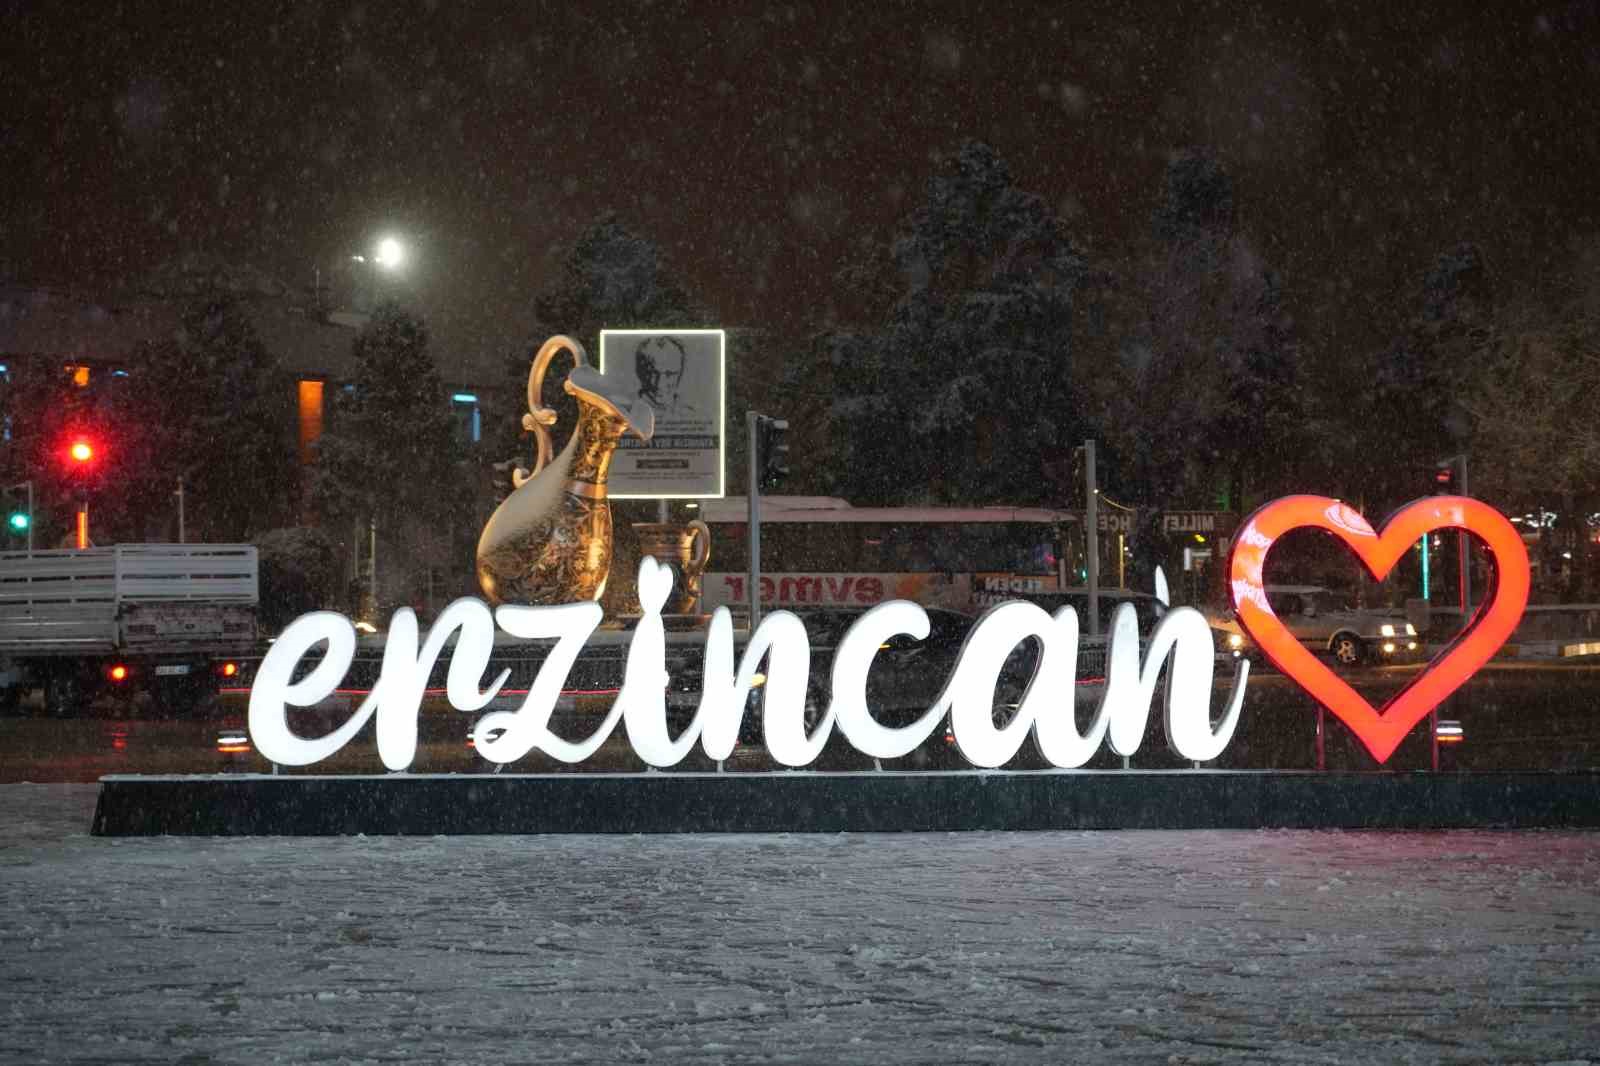 erzincan’da kar yağışı vatandaşları sevindirdi